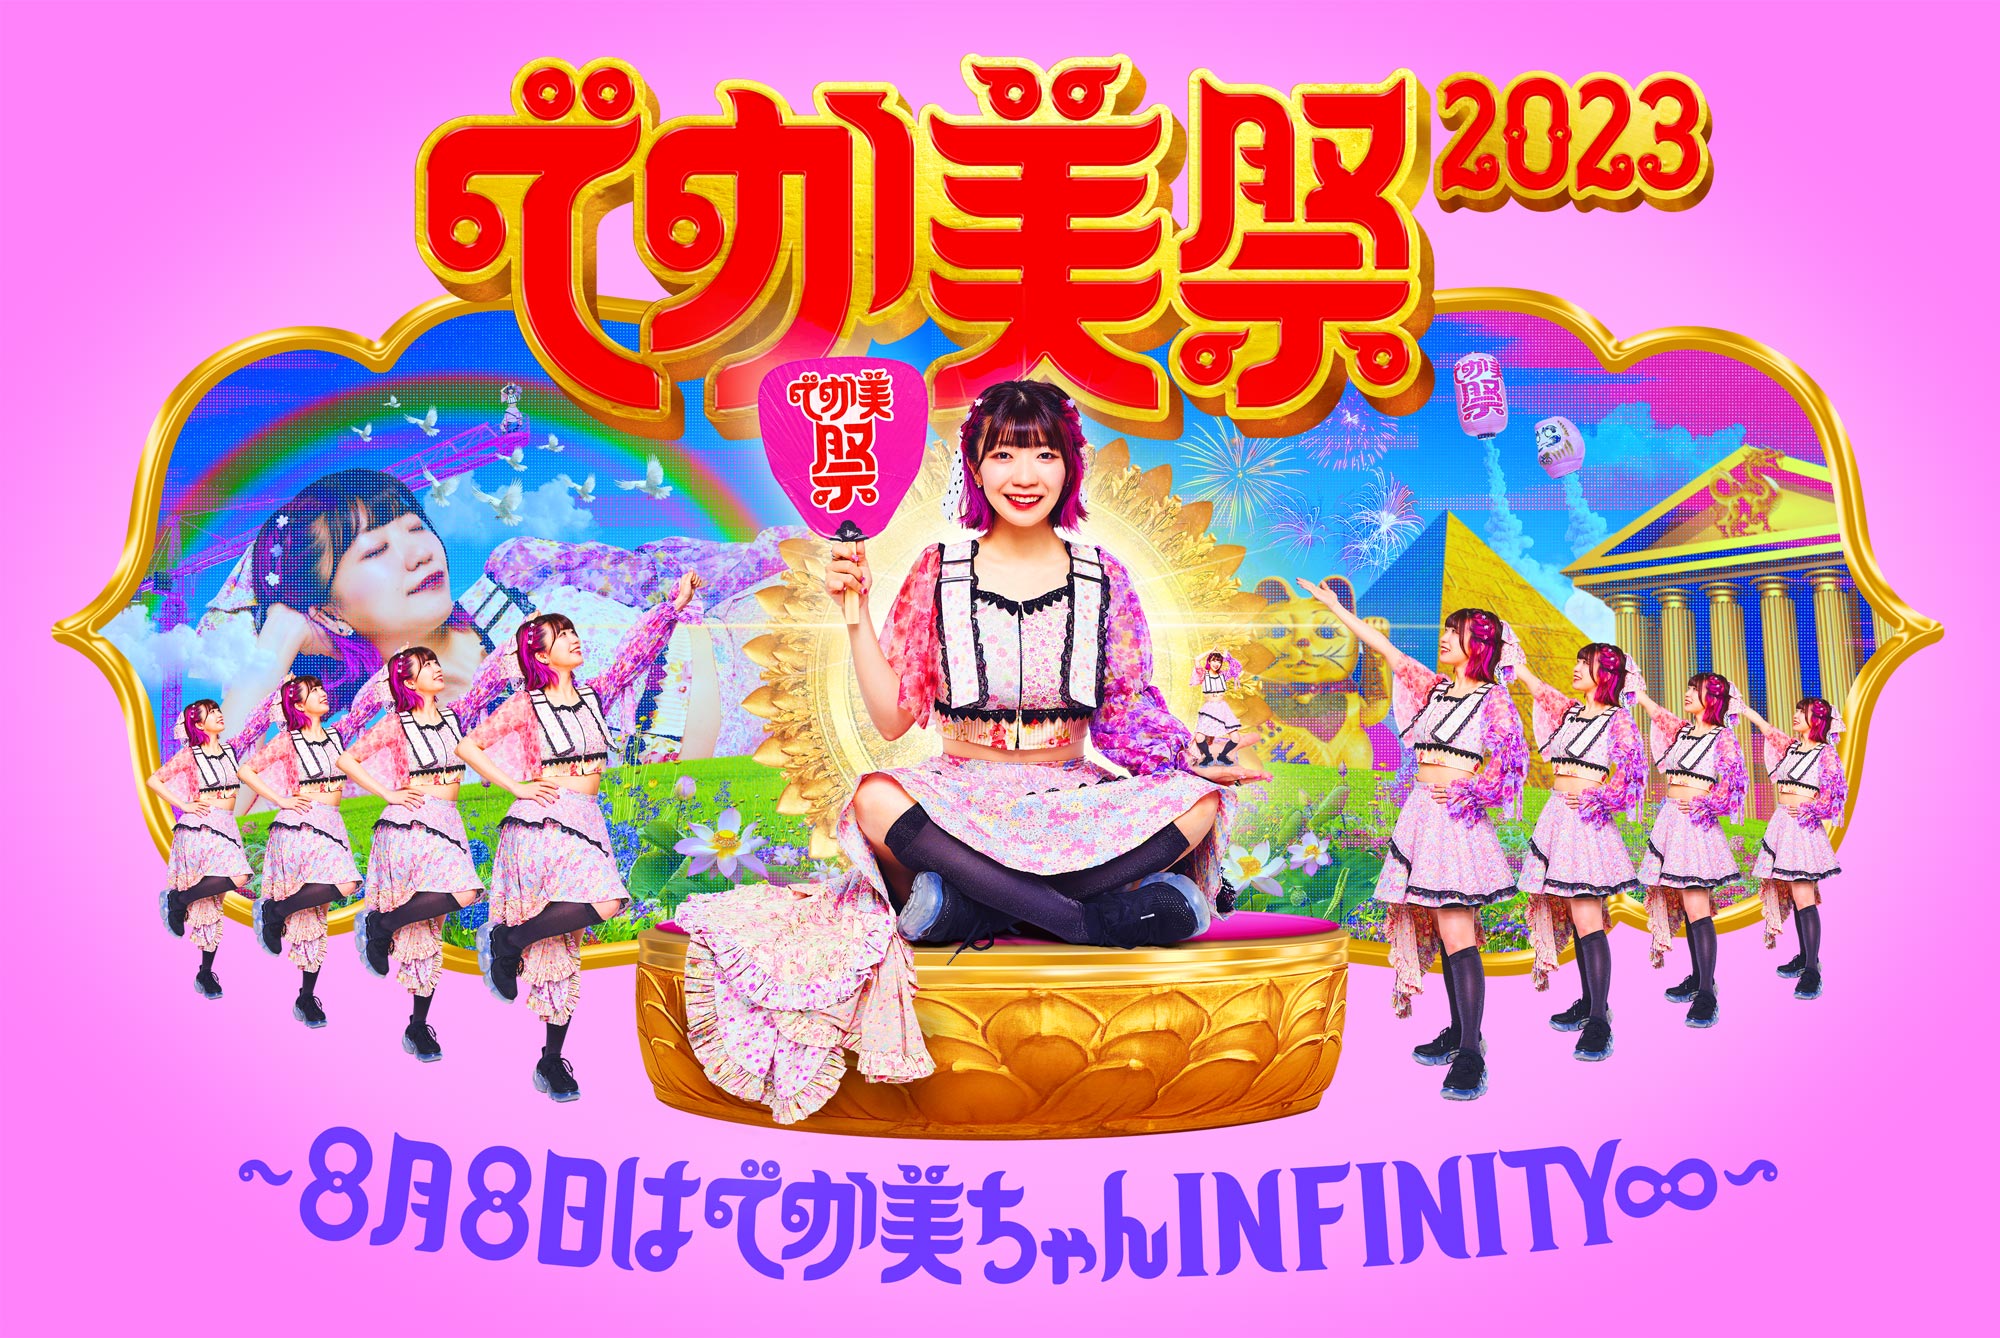 でか美祭2023〜8月8日はでか美ちゃんINFINITY∞〜